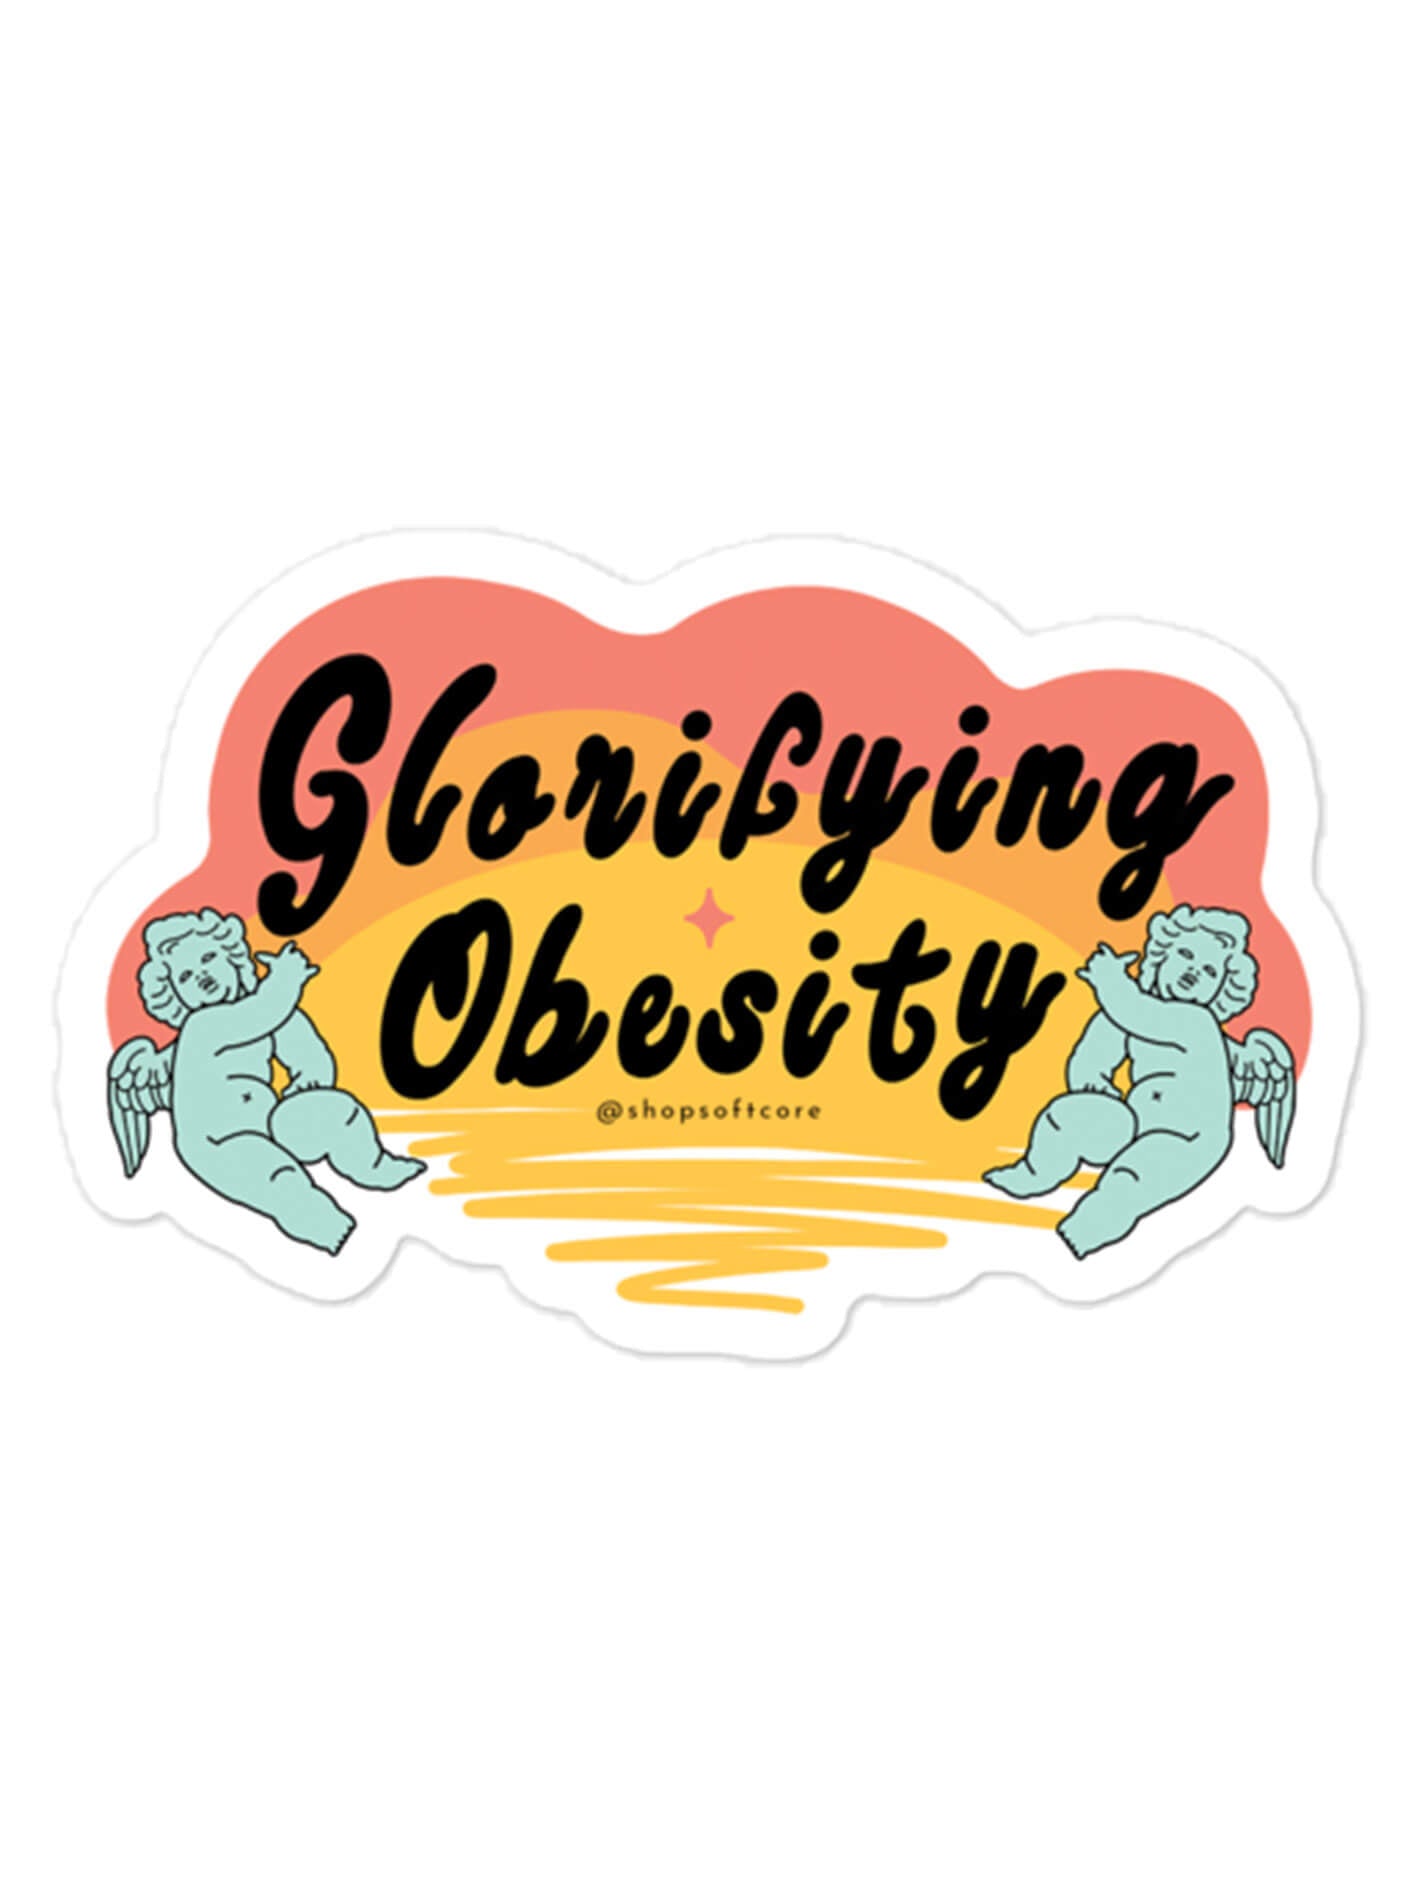 Glorifying obesity sticker.